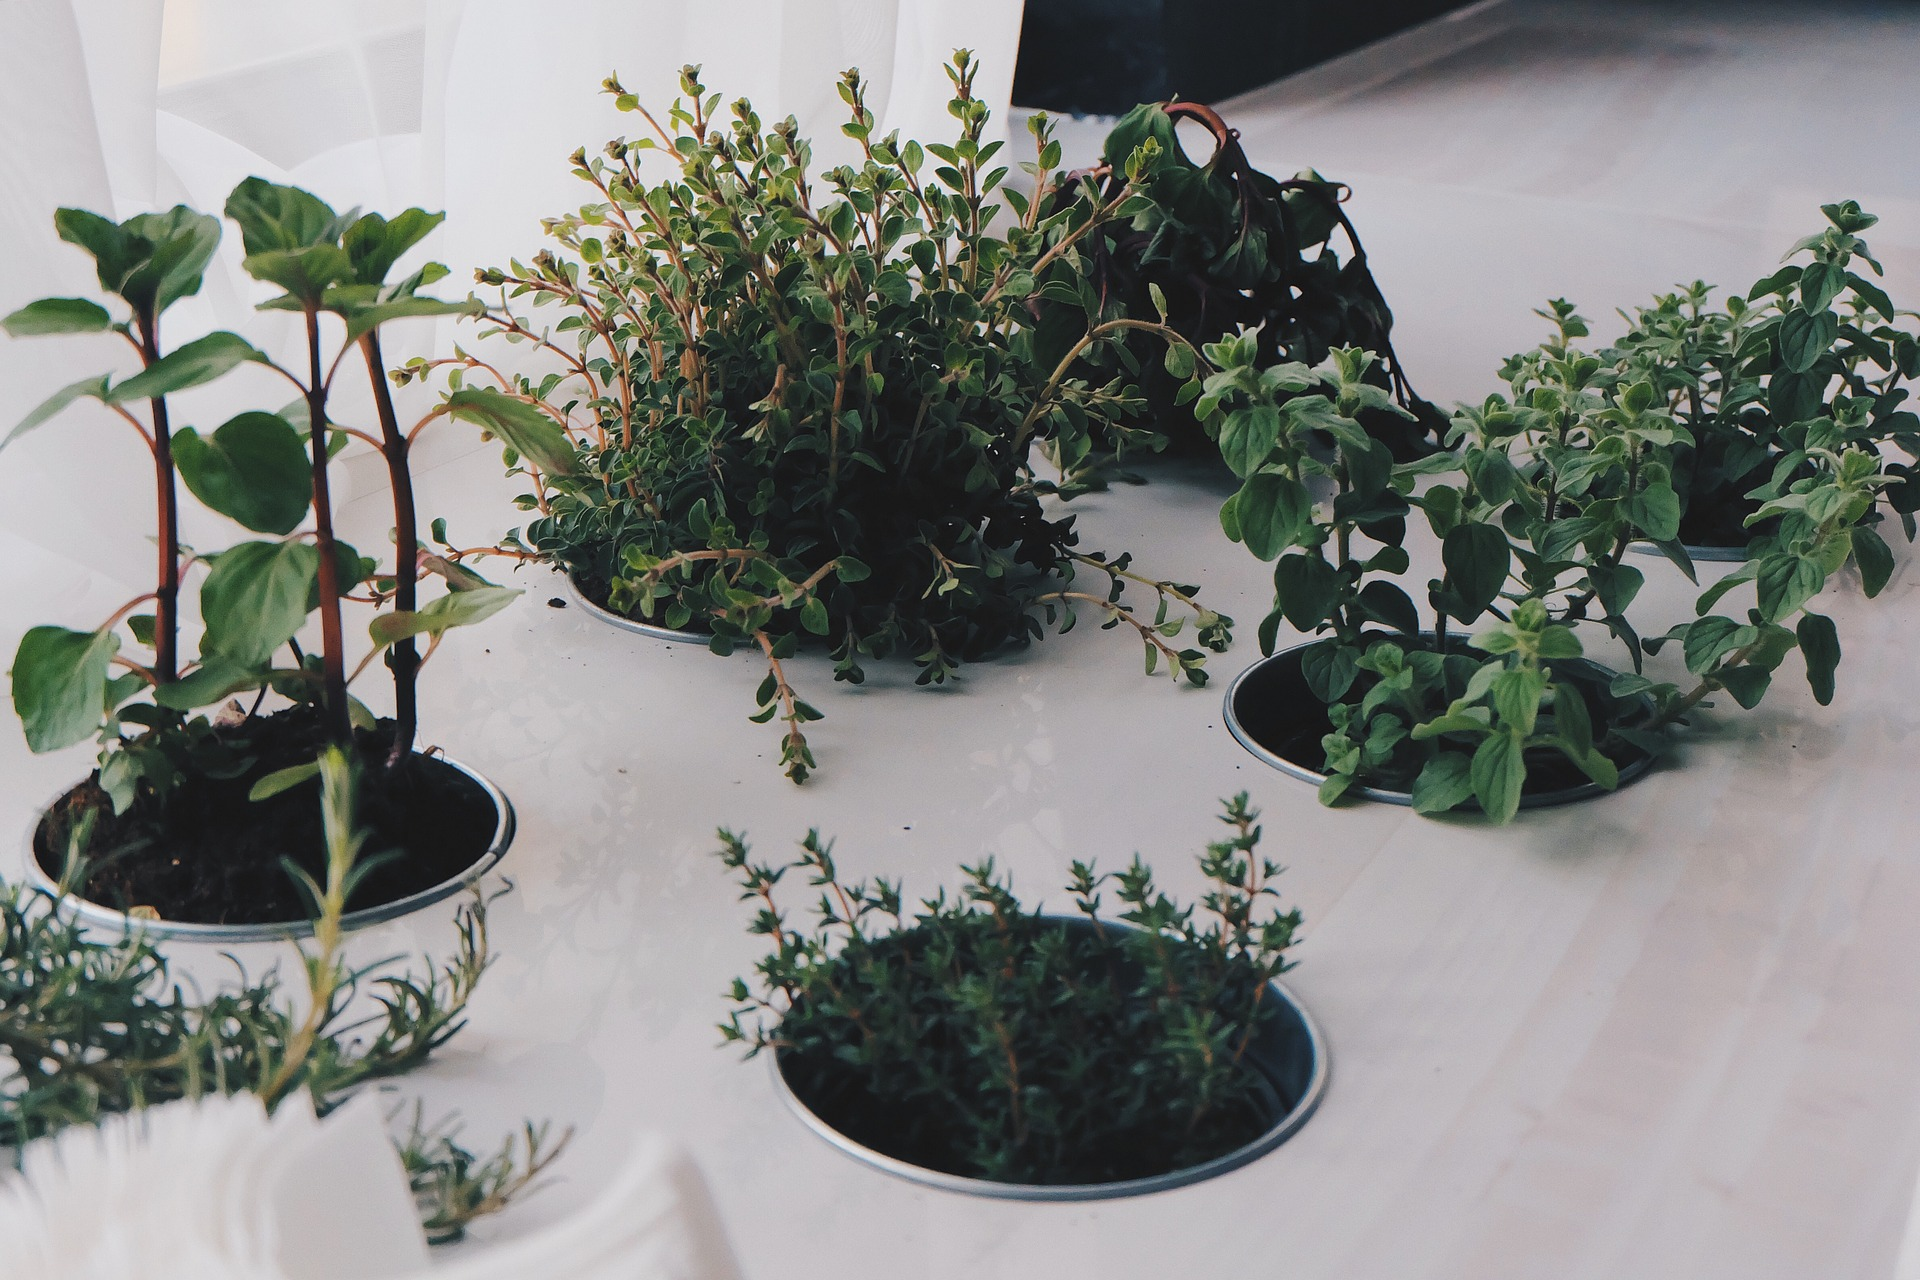 Indoor herb garden by donterase on Pixabay